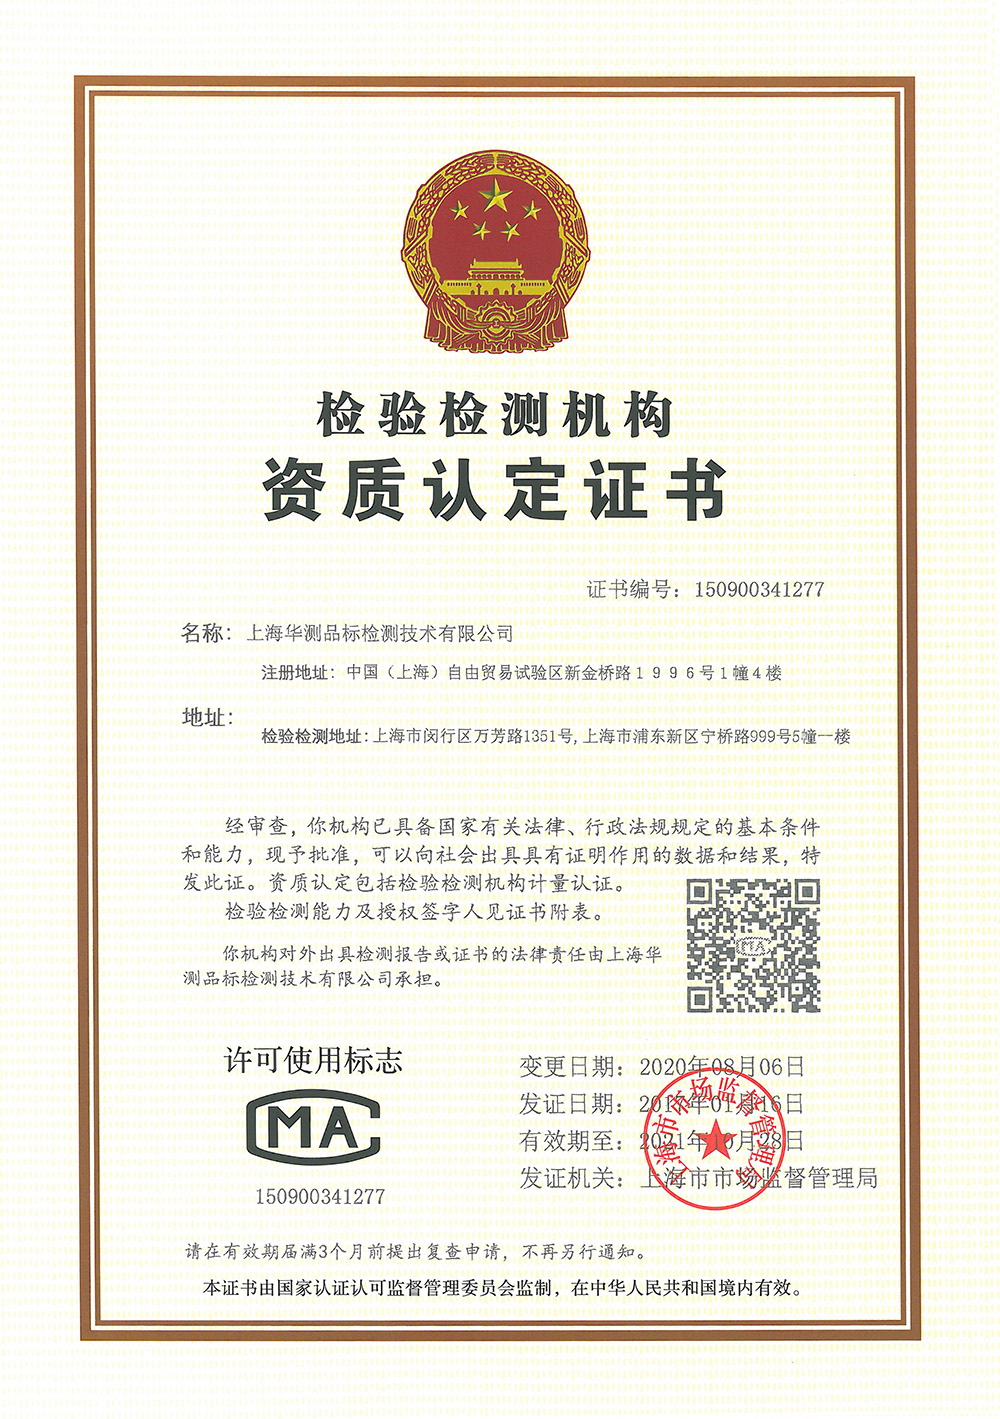 上海品標CMA證書